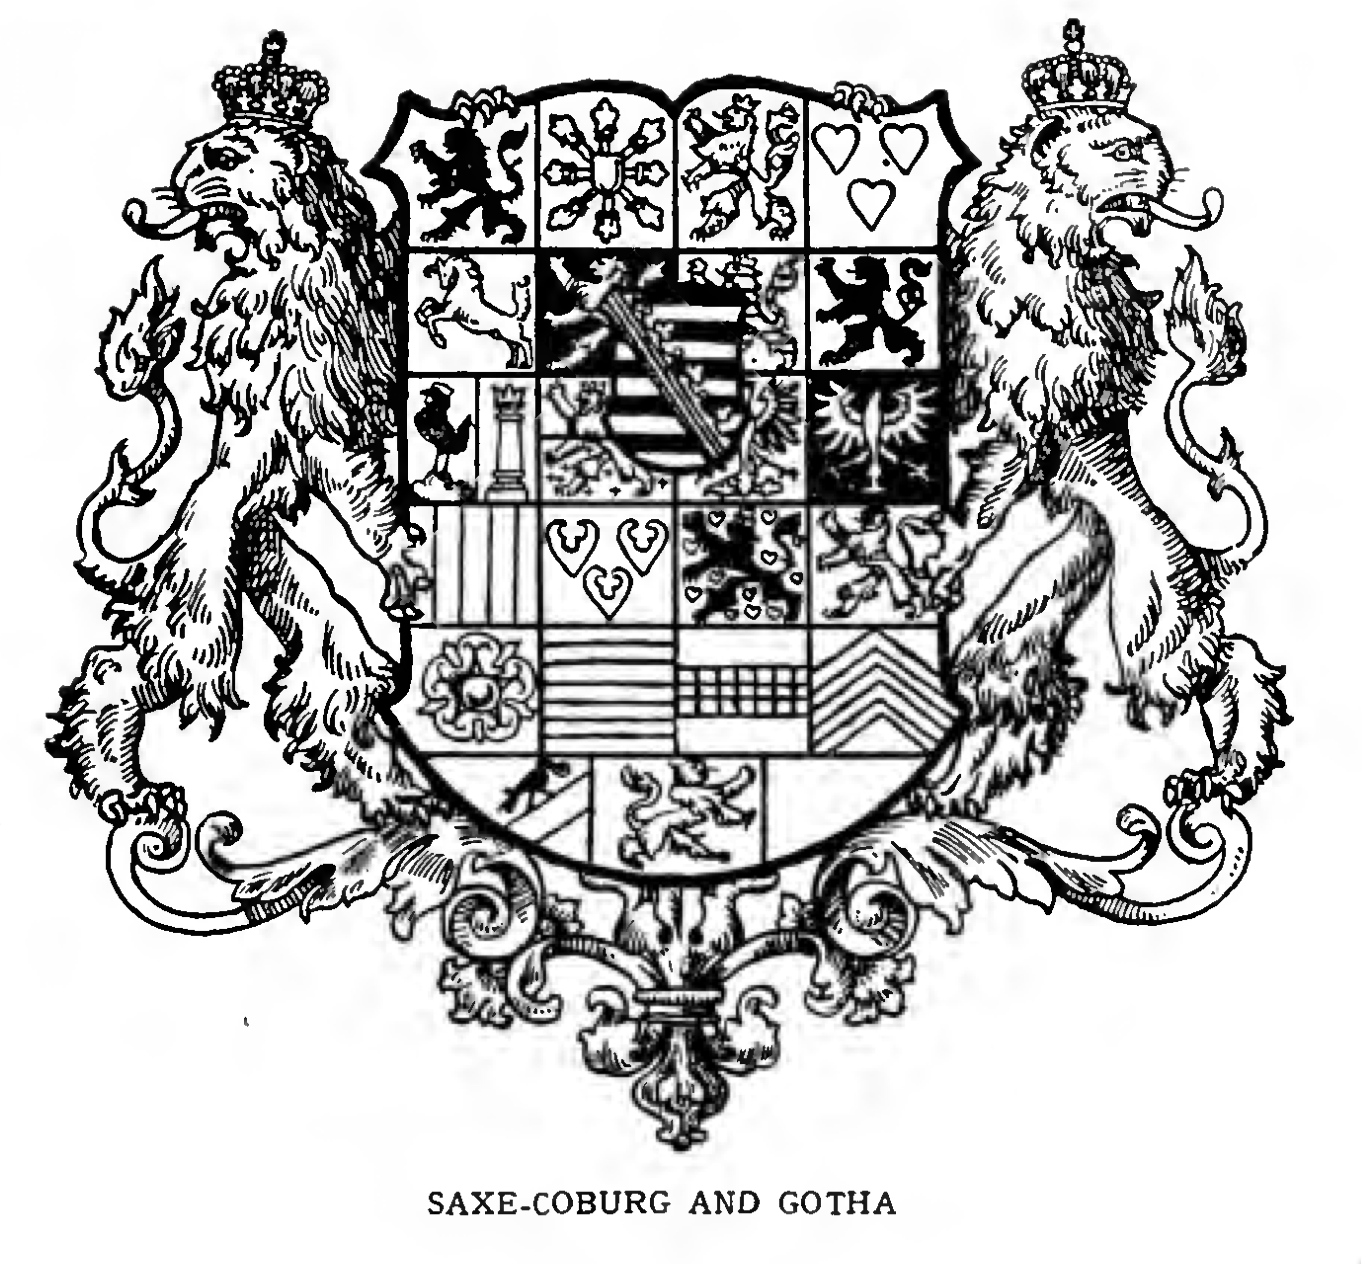 SAXE-COBURG AND GOTHA, Duchy of.